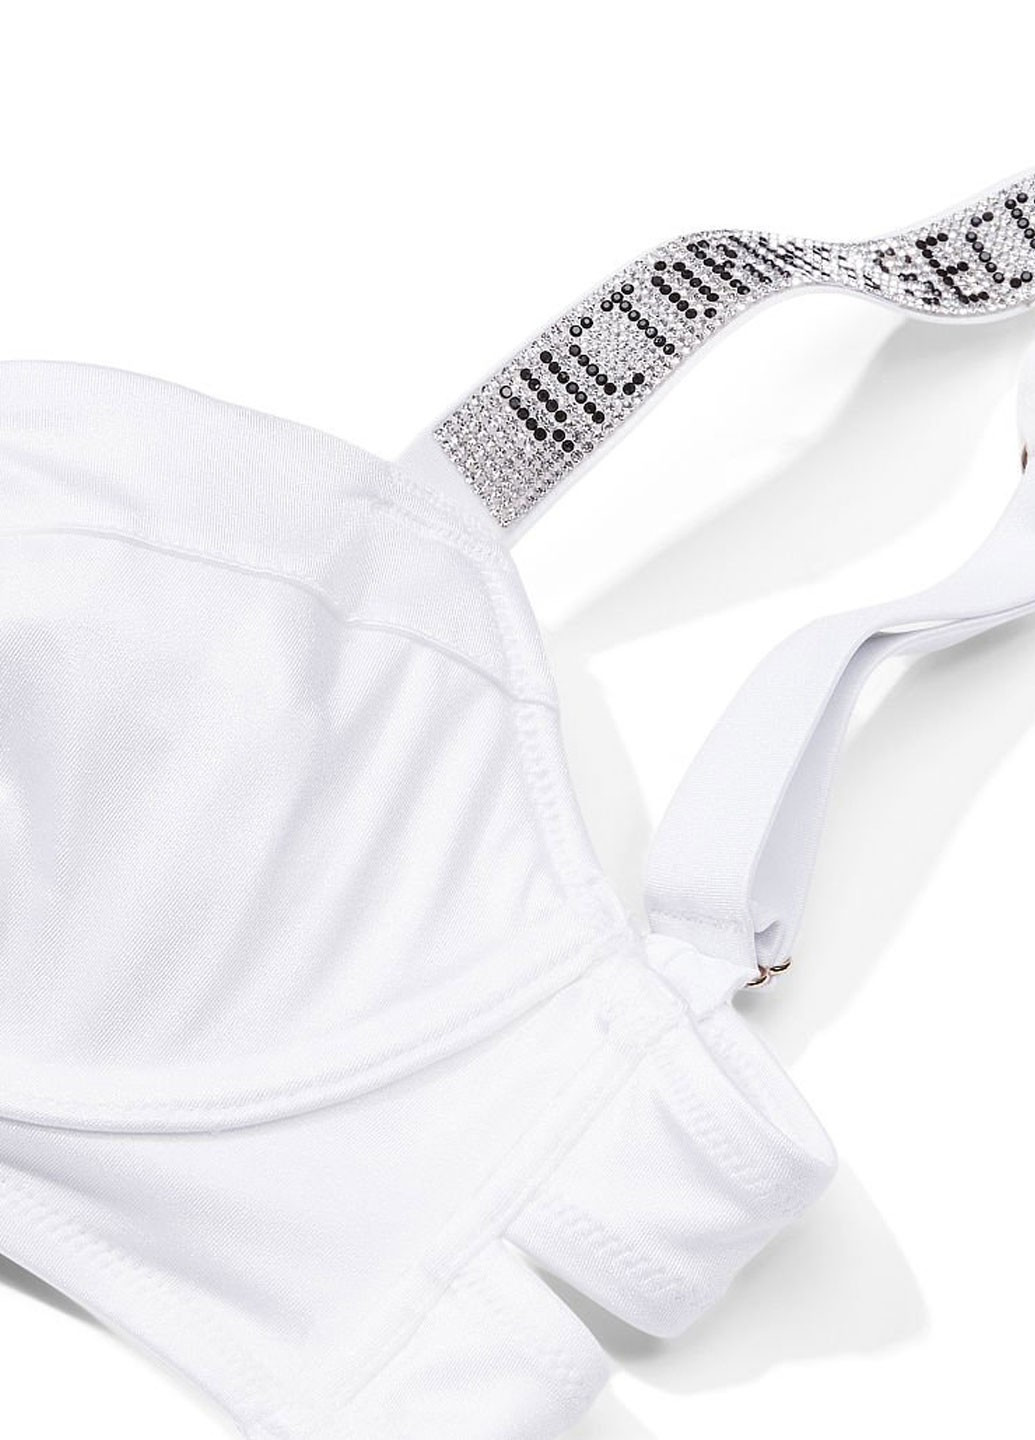 Белый демисезонный купальник (лиф, трусики) раздельный Victoria's Secret